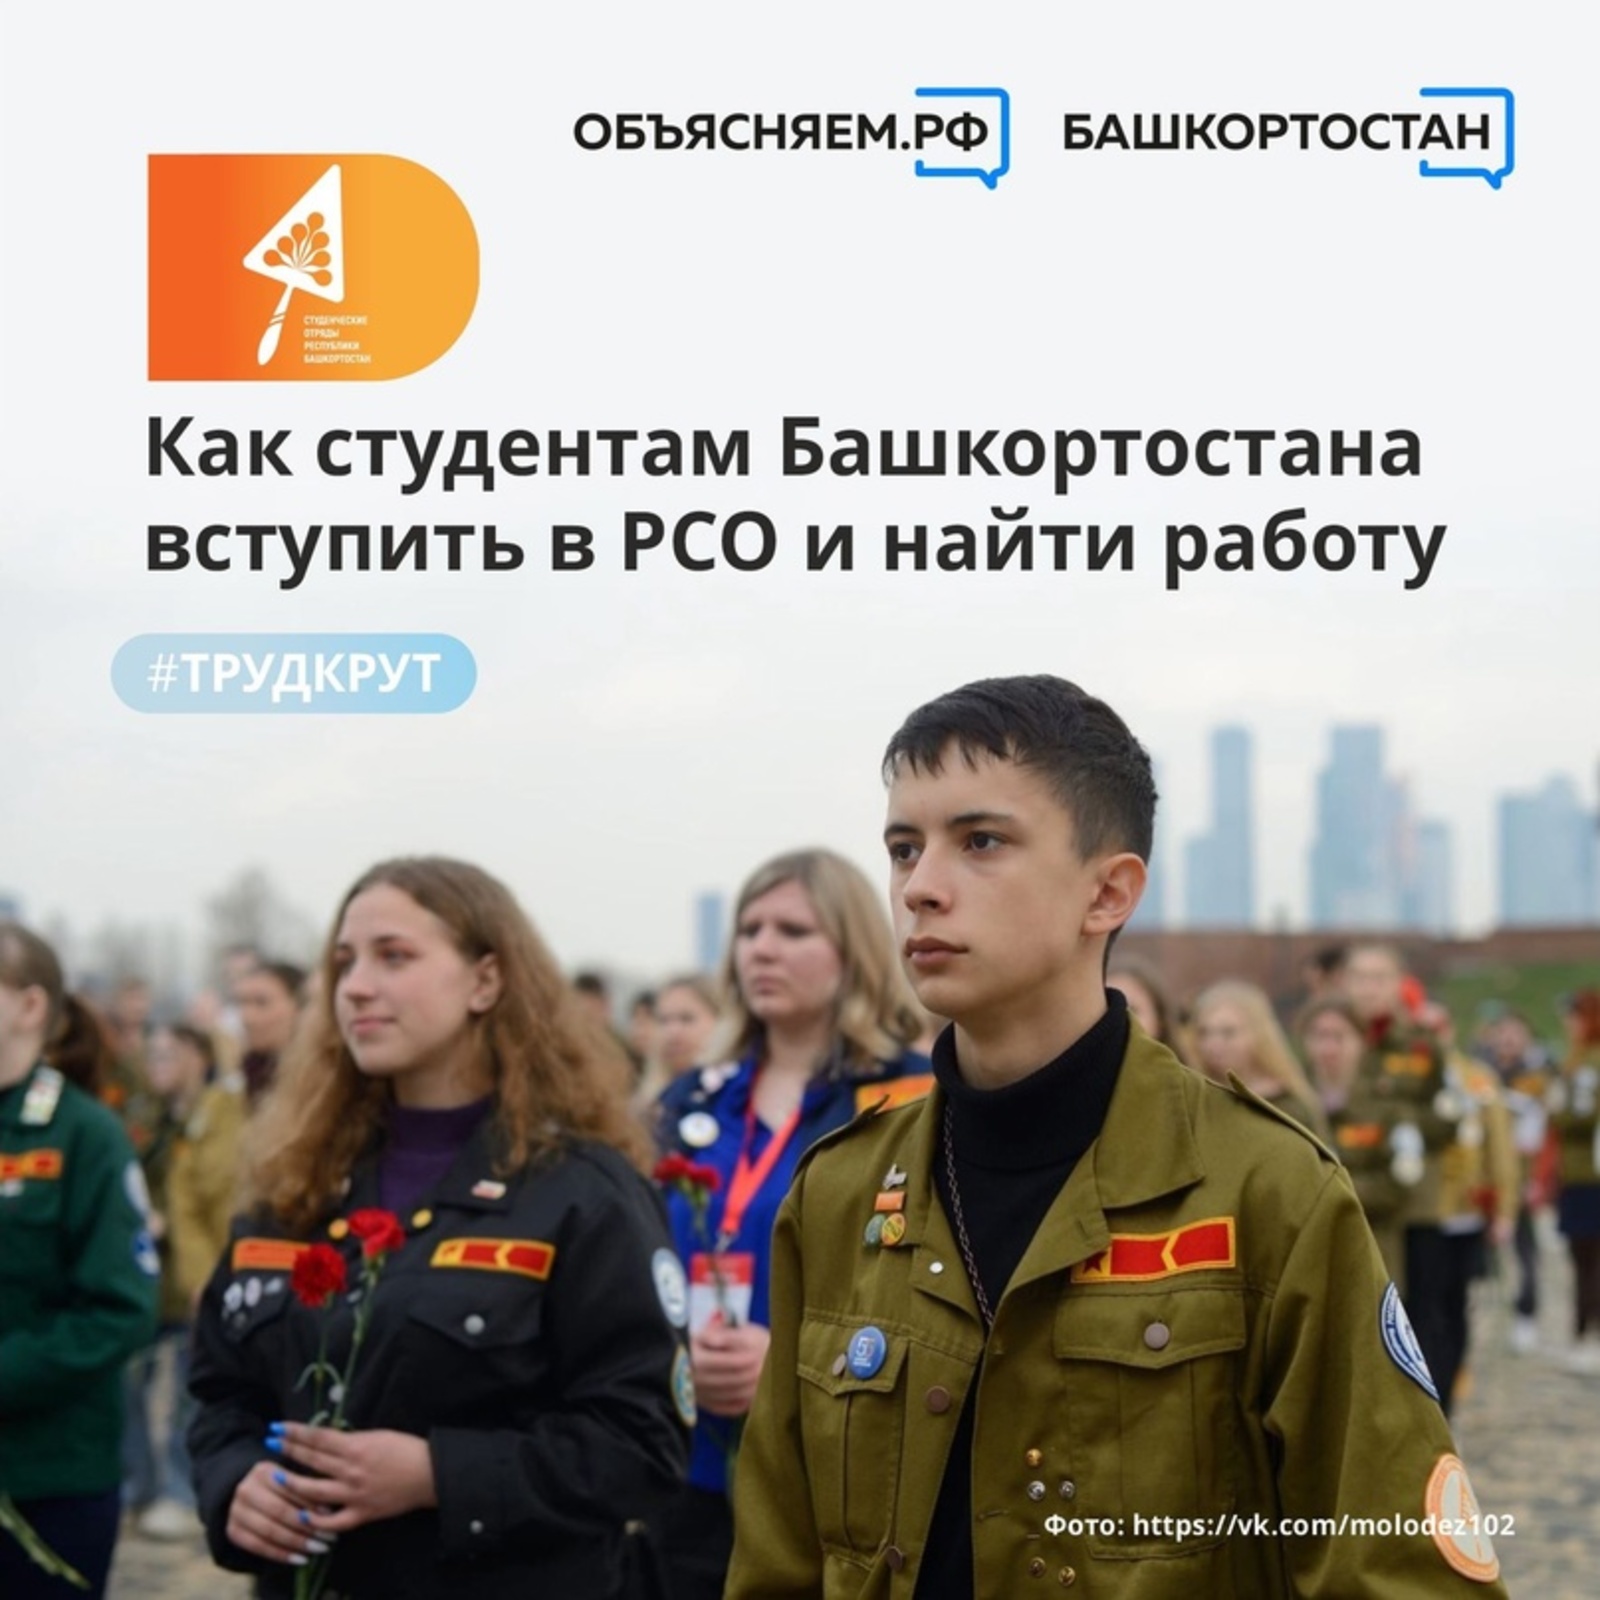 Студенты из Башкортостана могут найти работу благодаря участию в Российских студенческих отрядах